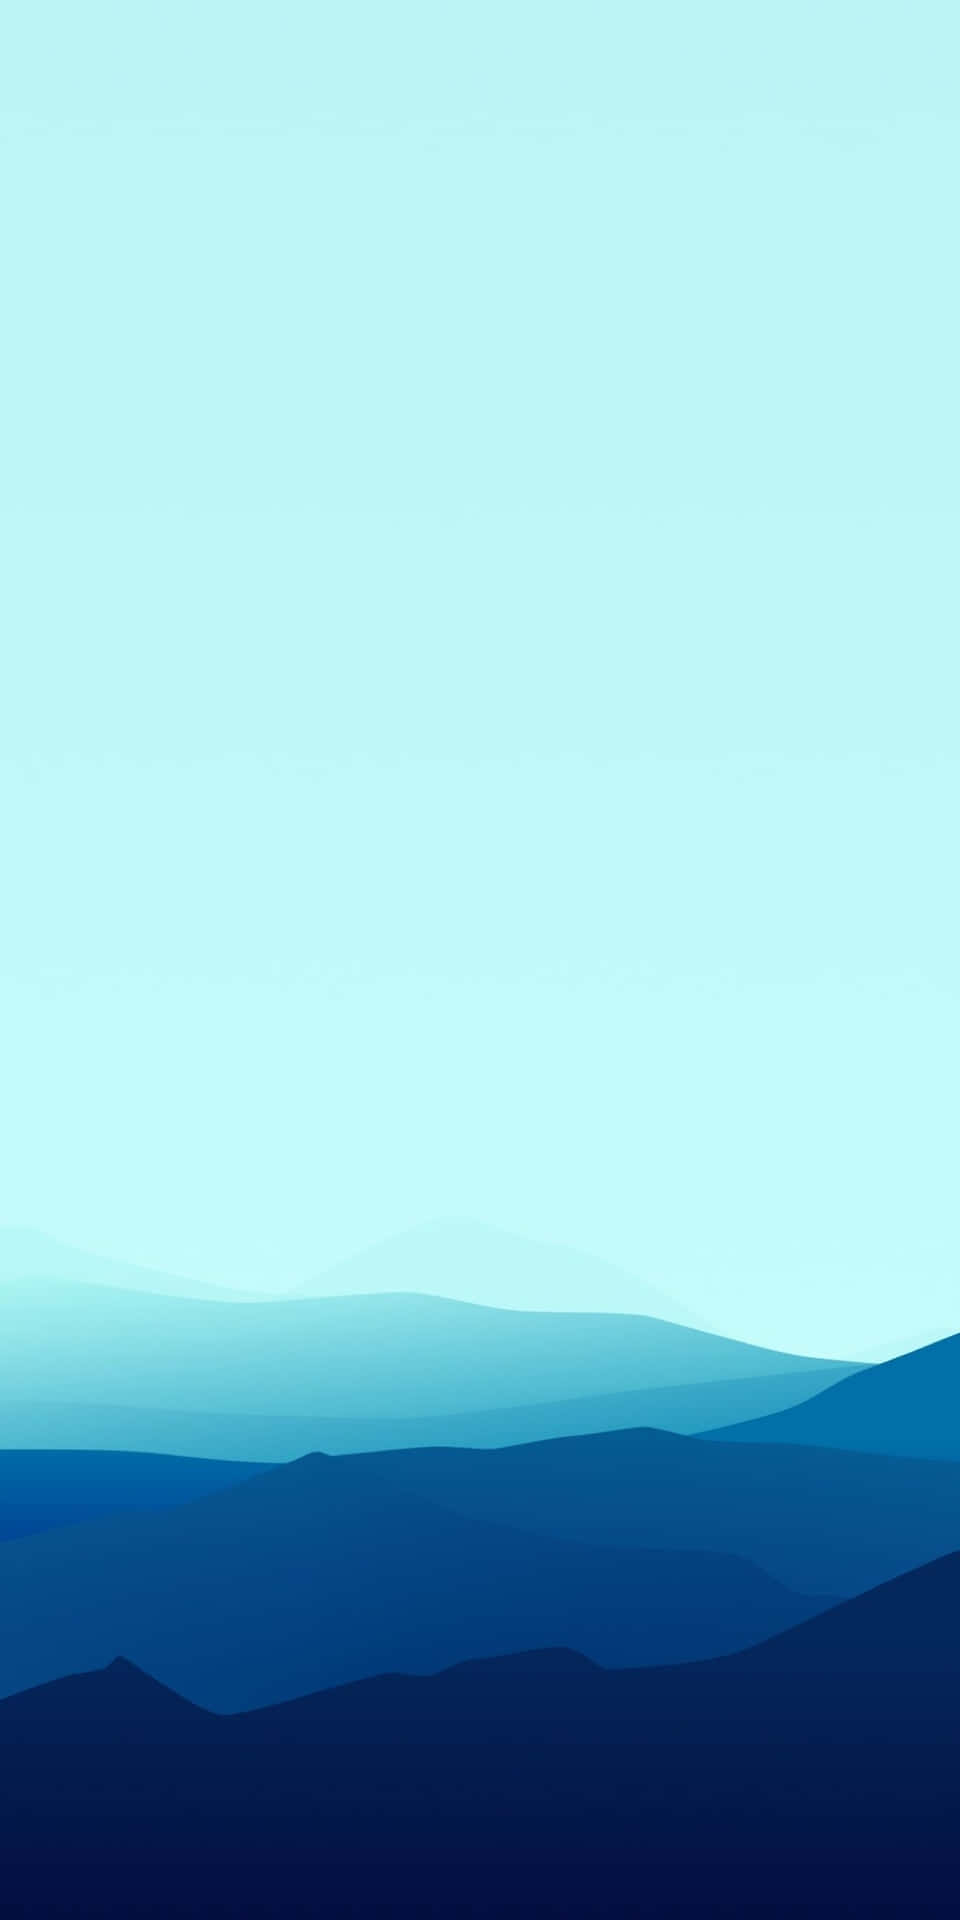 Pixel3 Minimalistischer Hintergrund Im Blauen Design Mit Landschaft